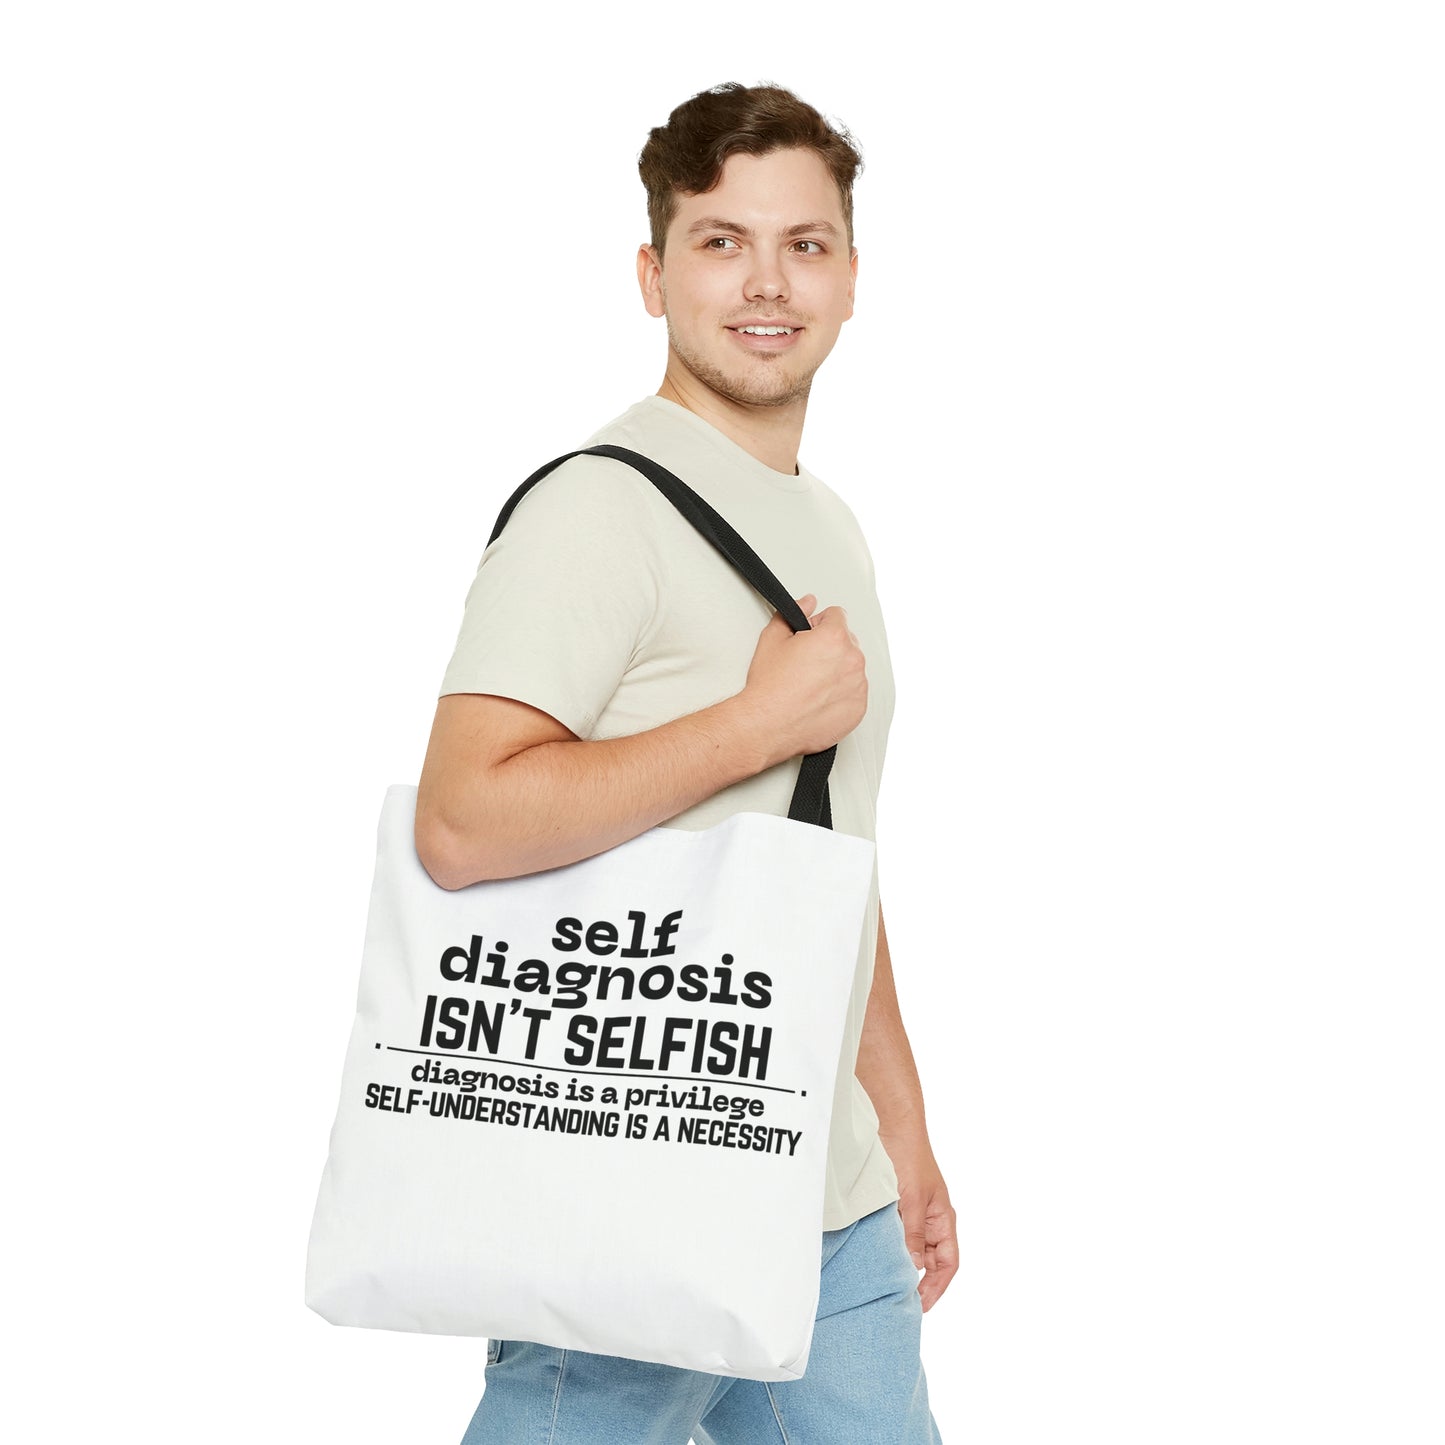 "Self Diagnosis Isn't Selfish" Tote Bag in 3 sizes